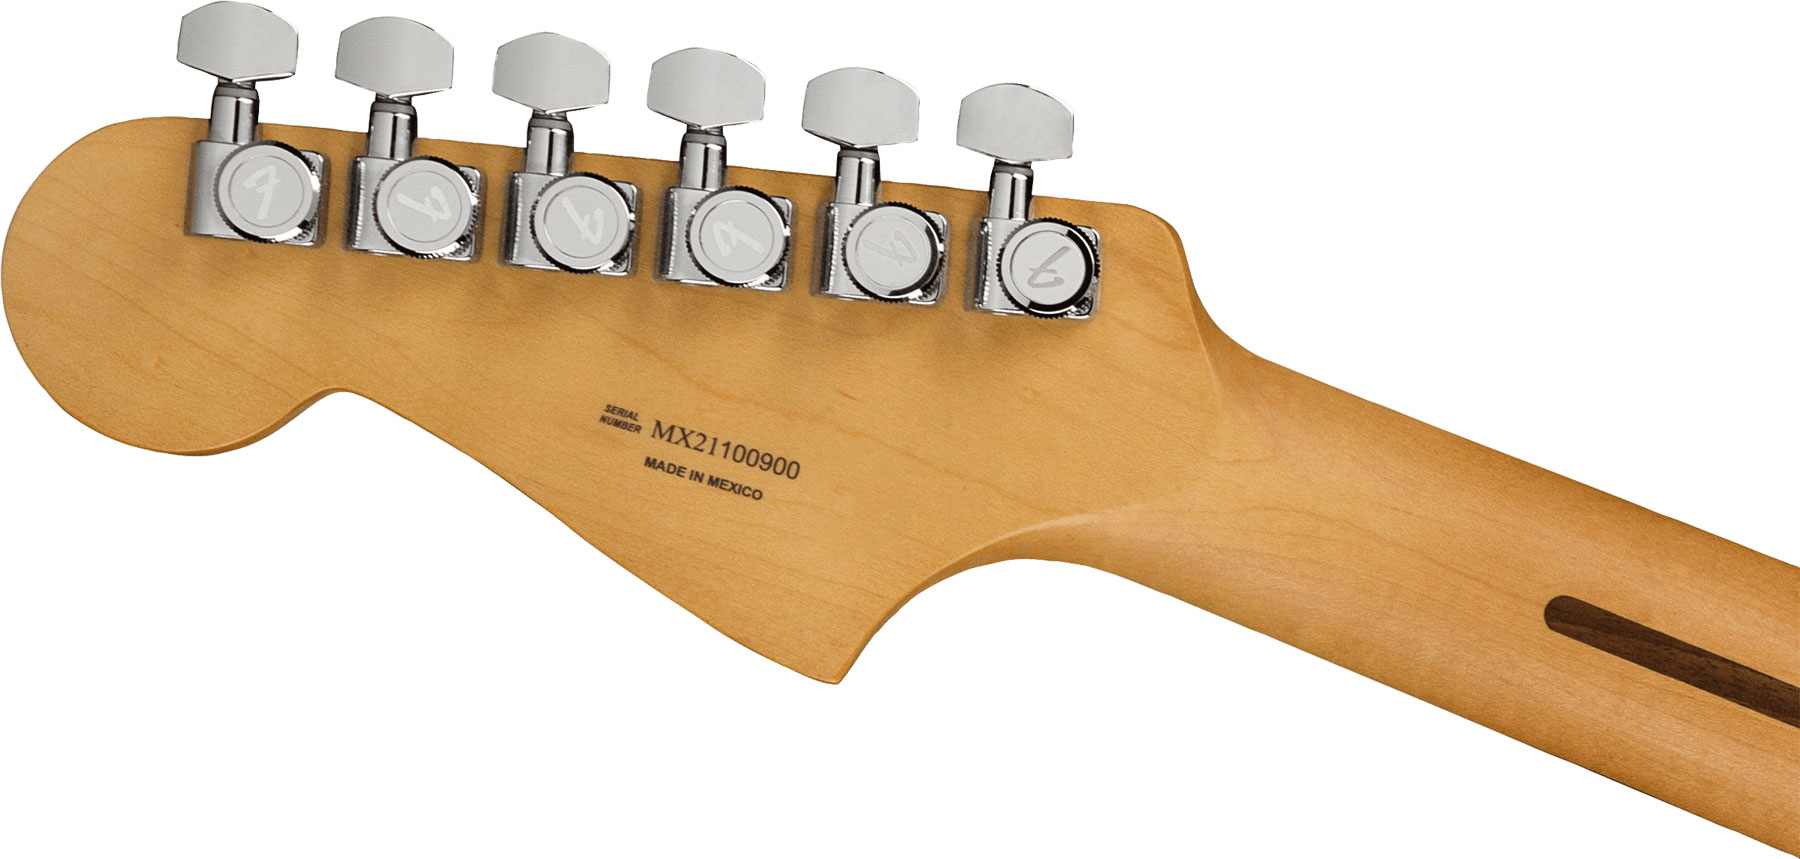 Fender Meteora Player Plus Hh Mex 2h Ht Pf - Belair Blue - Retro-rock elektrische gitaar - Variation 3